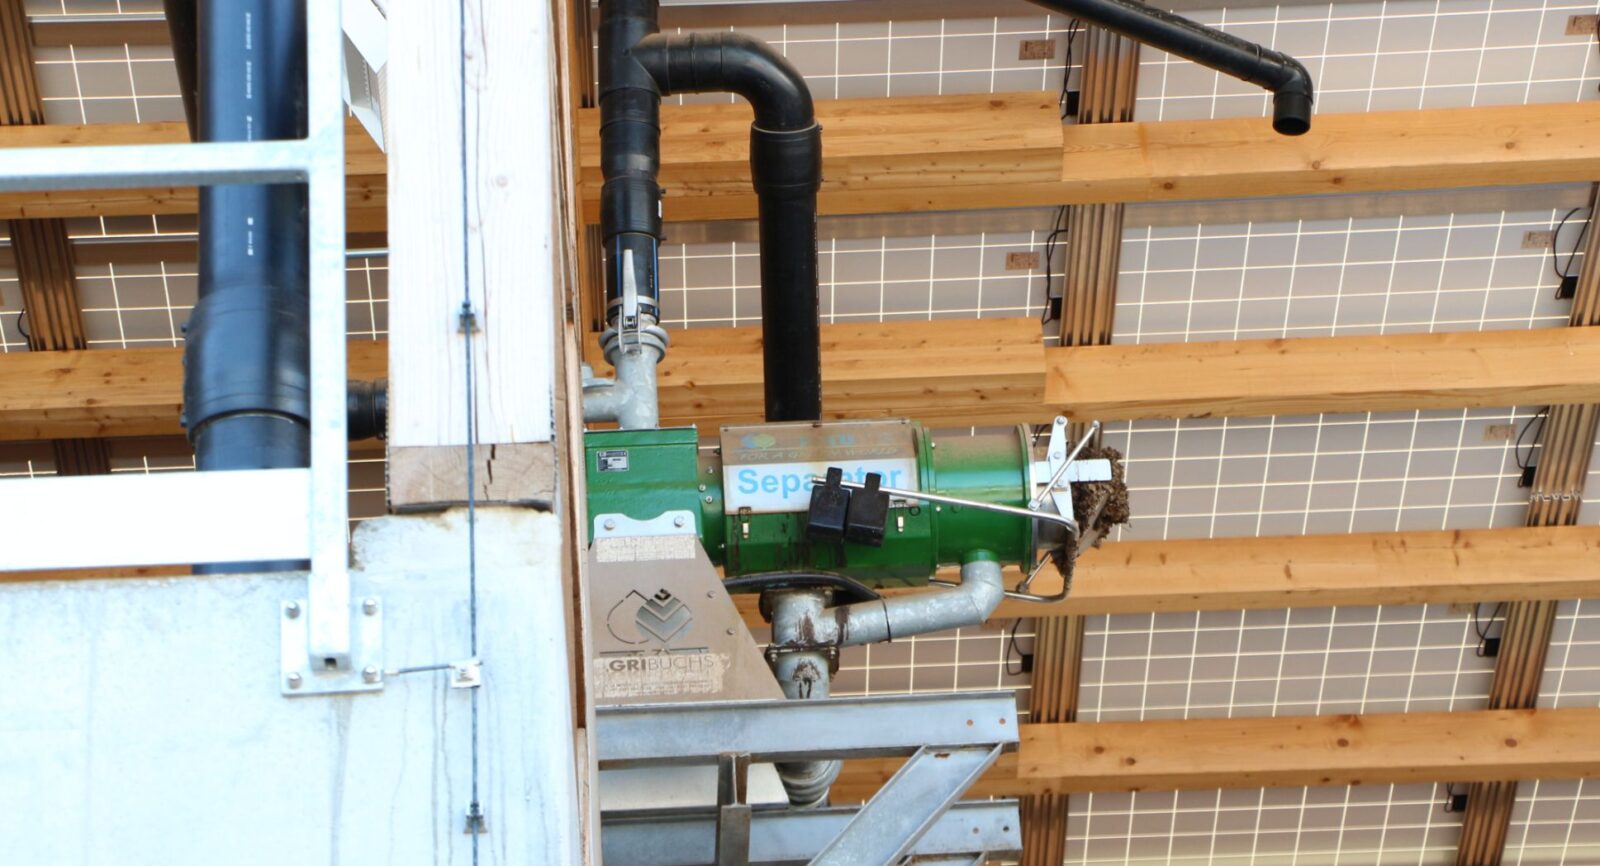 Das Schutzdach für die Aufbewahrung der Gärgüter ist mit Photovoltaik-Paneelen bedeckt. Der Separator (in der Bildmitte) trennt das Flüssigmaterial vom trockenen Gärmaterial.